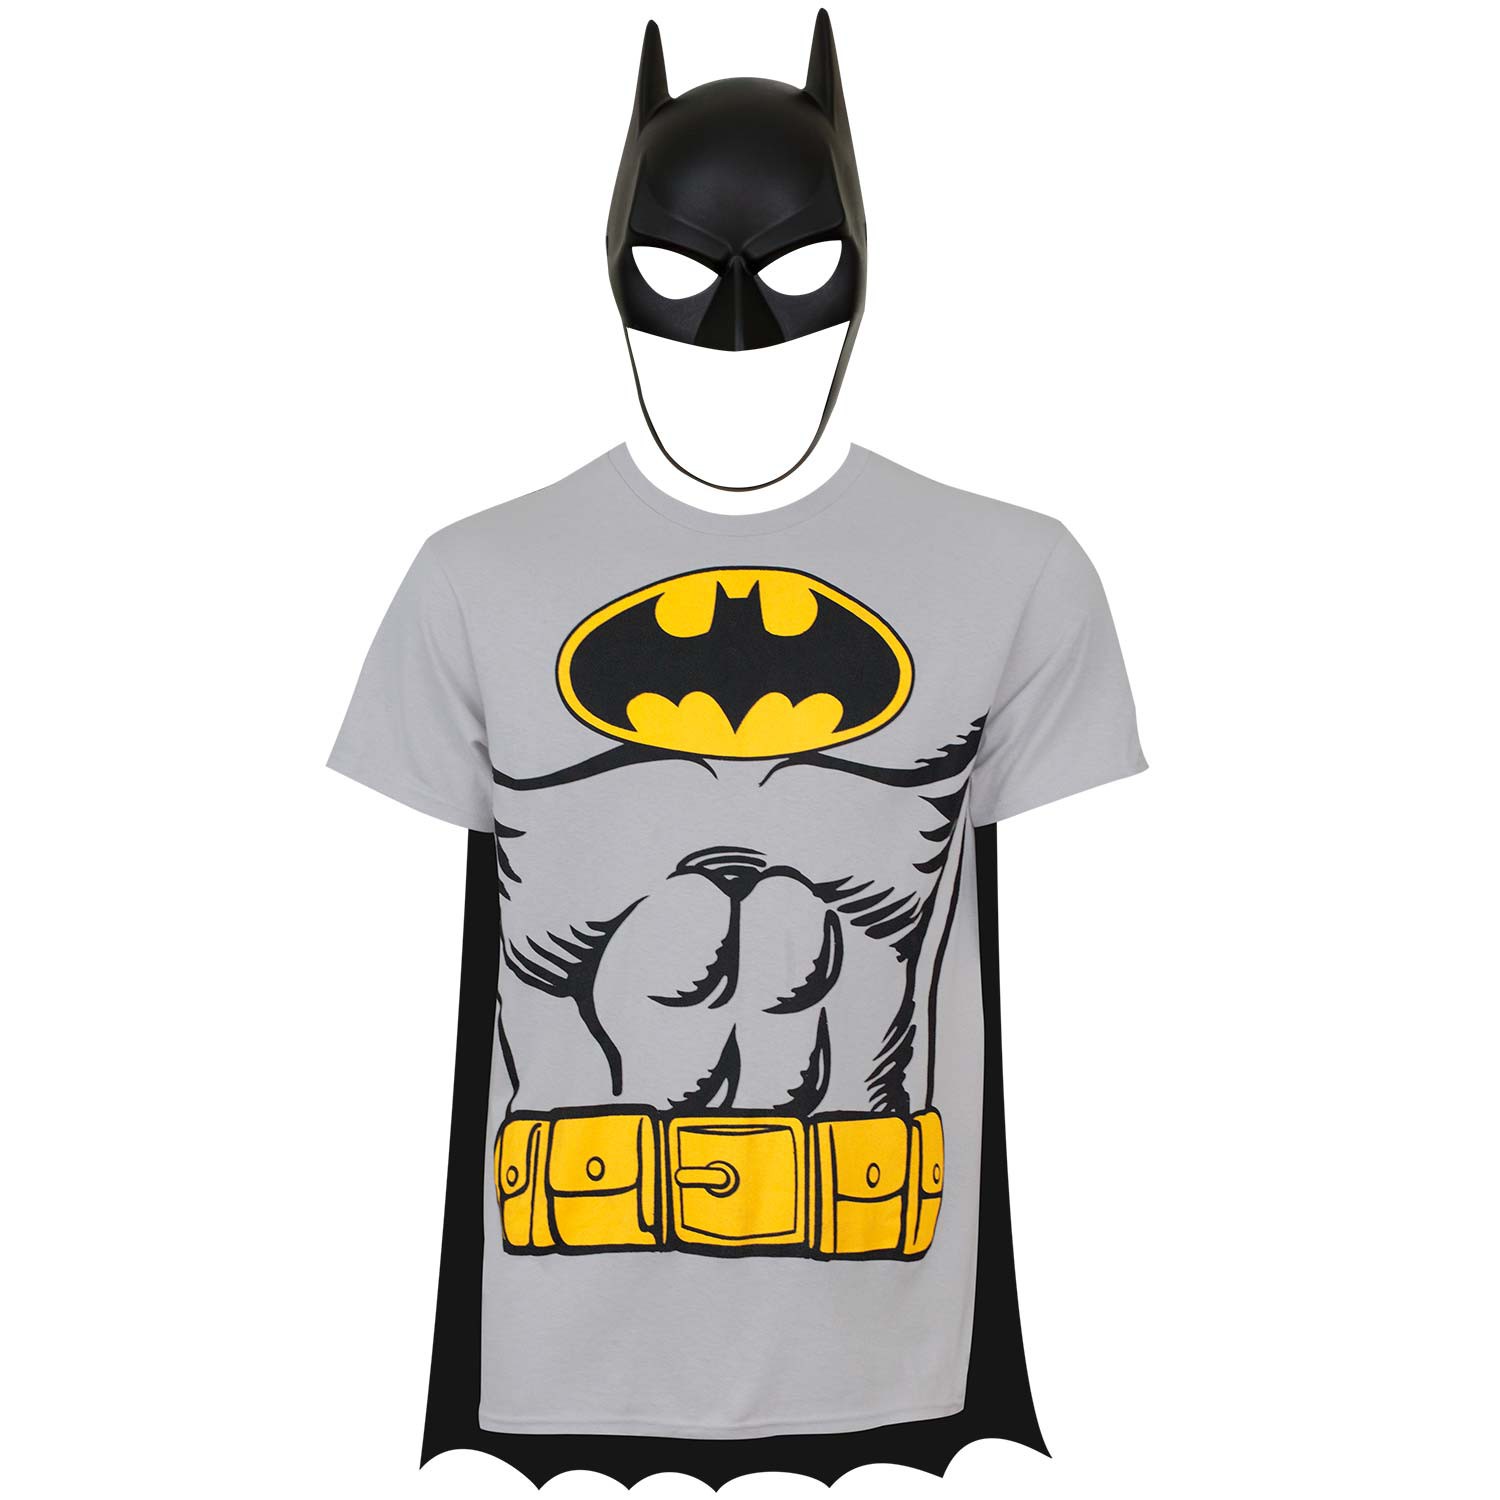 Mens Batman Costume Kit - image 1 of 2